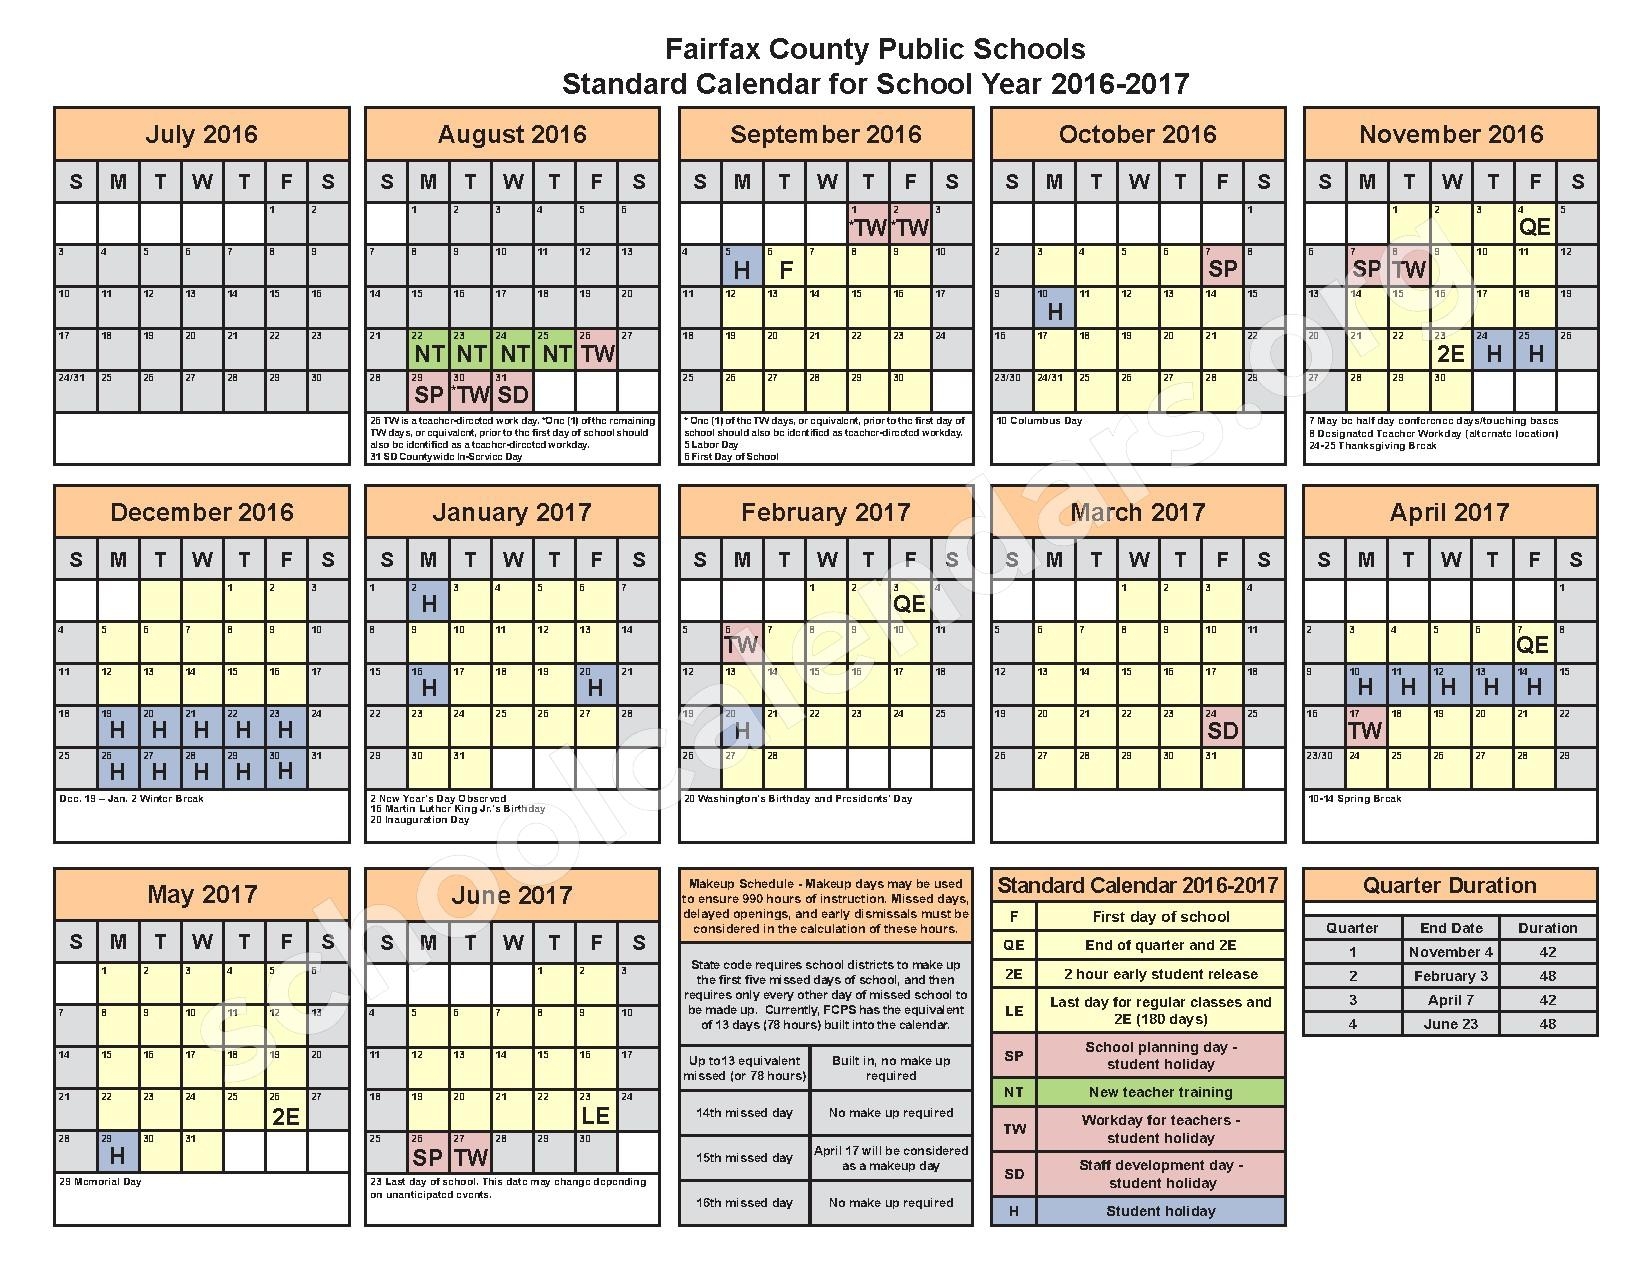 Fairfax County School Calendar